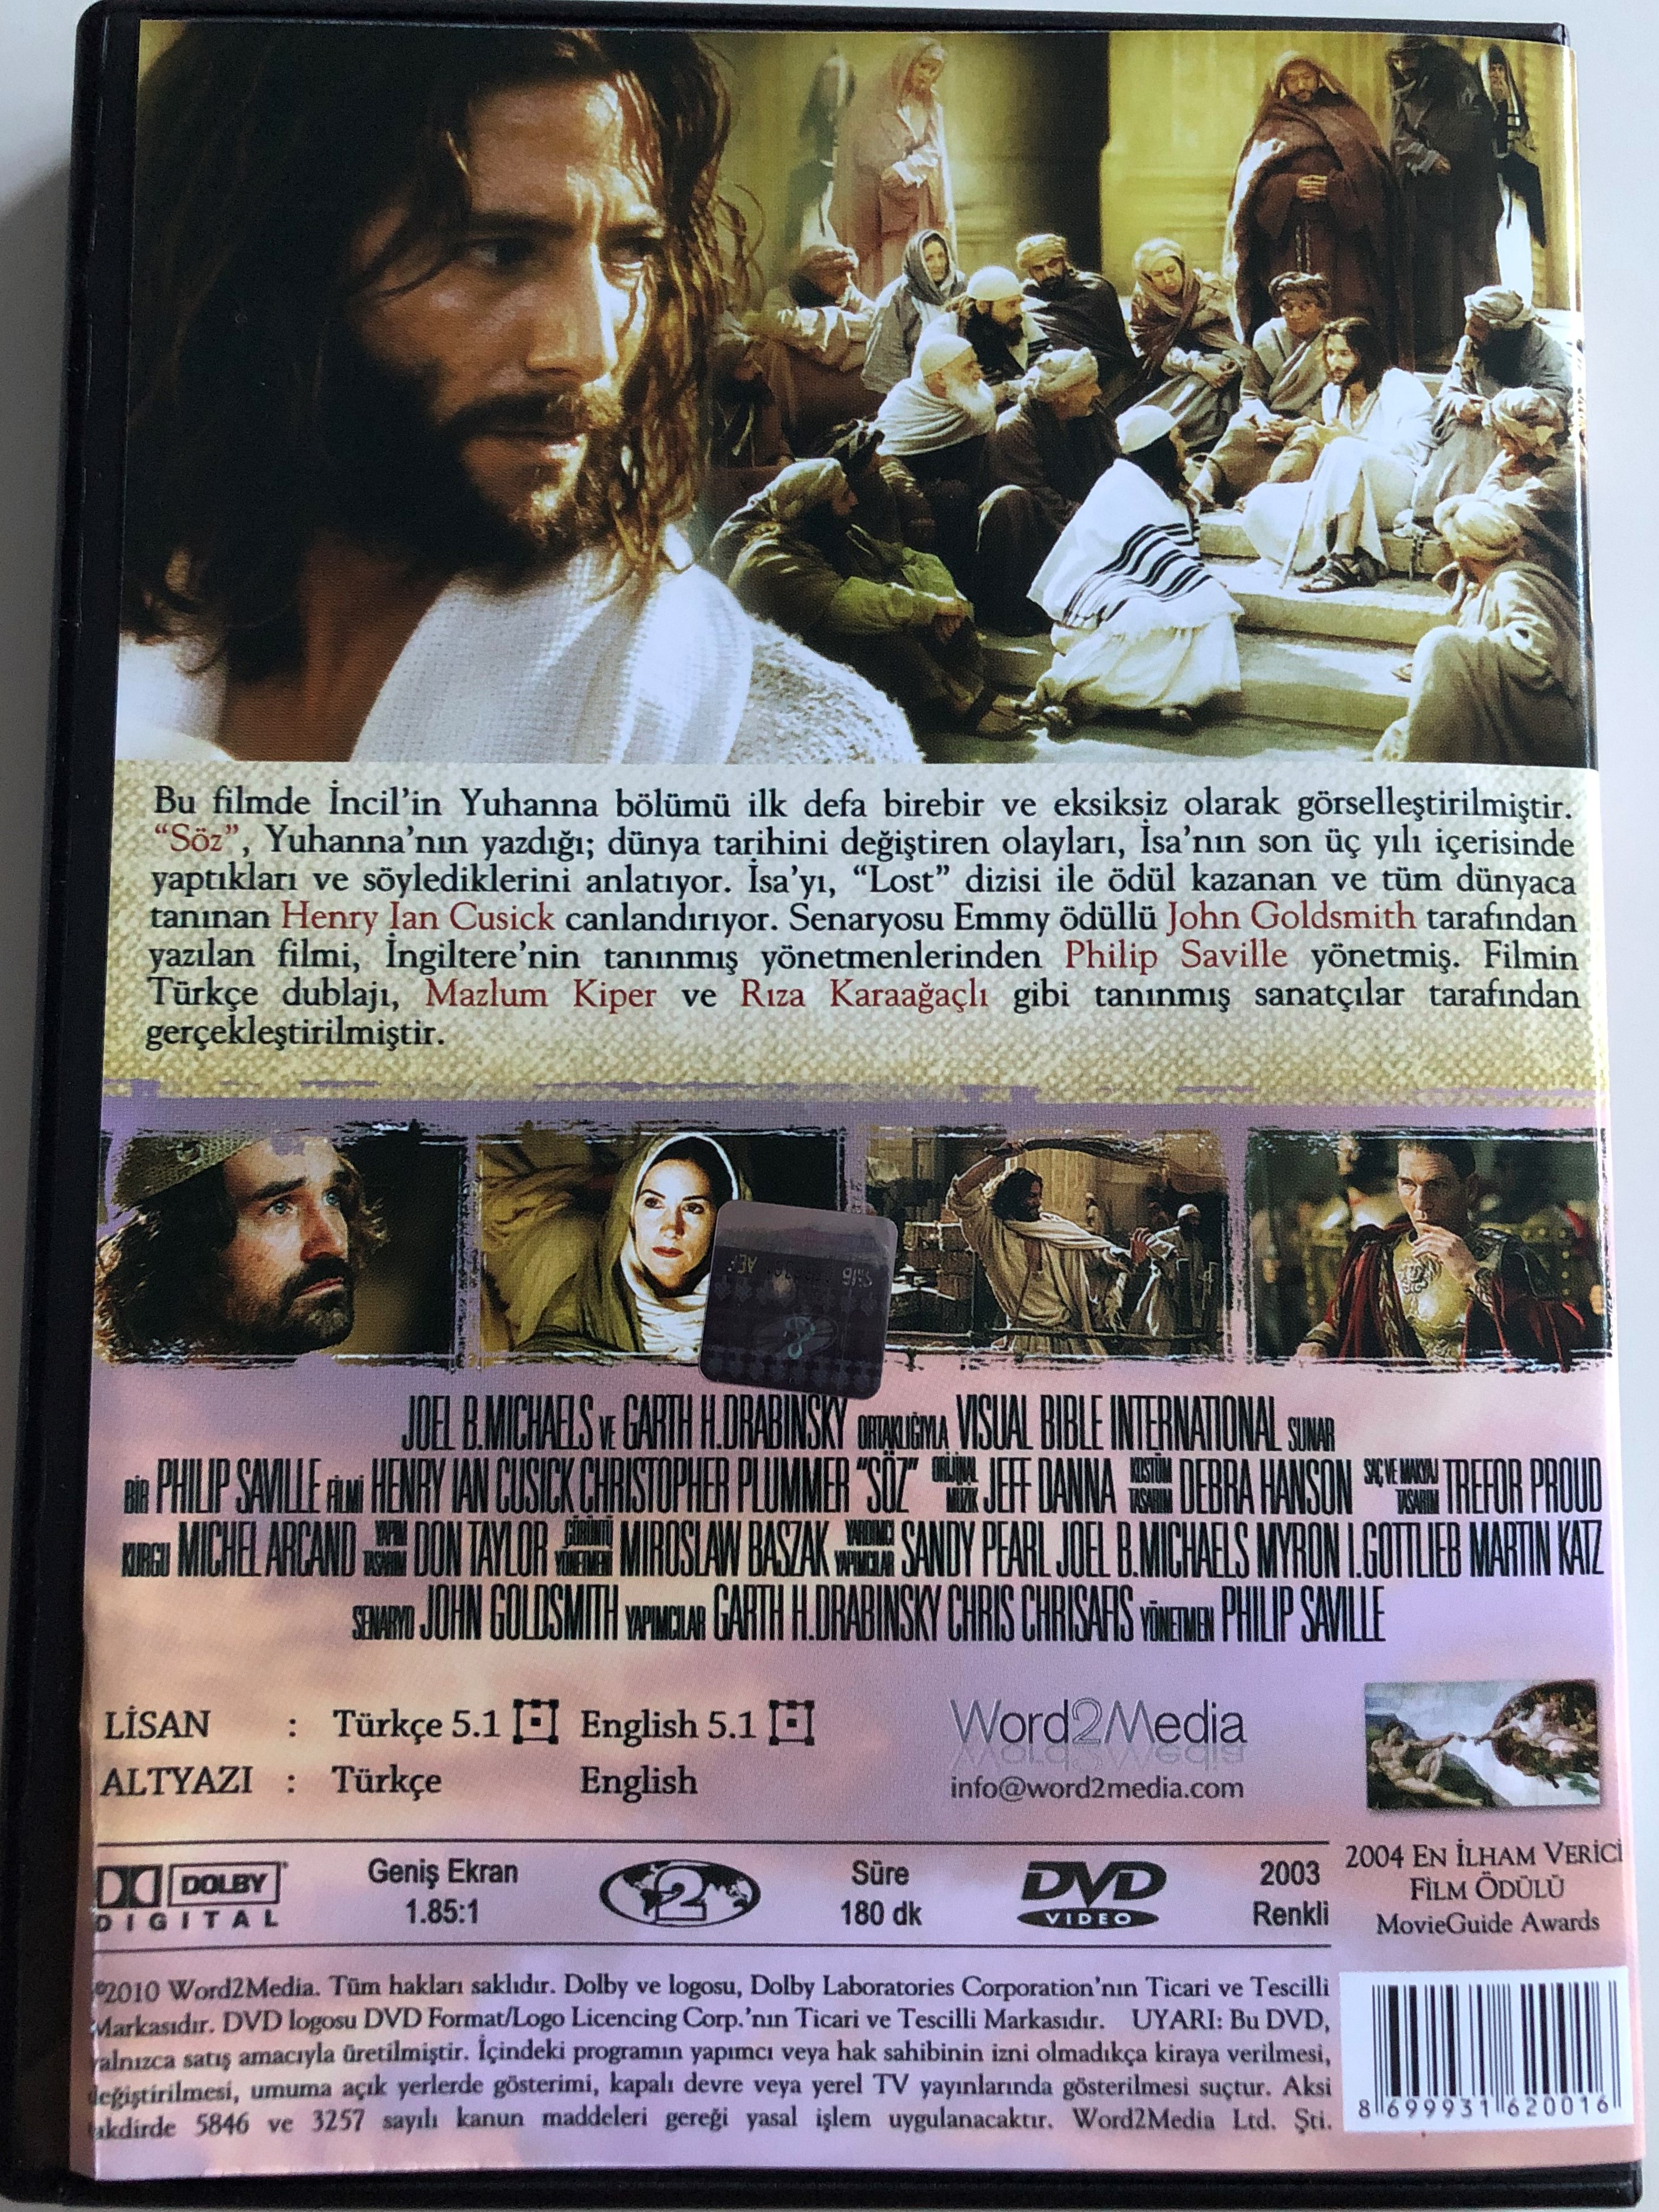 the-gospel-of-john-dvd-2003-s-z-directed-by-philip-saville-starring-henry-ian-cusick-stuart-bunce-daniel-kash-stephen-russell-2-.jpg